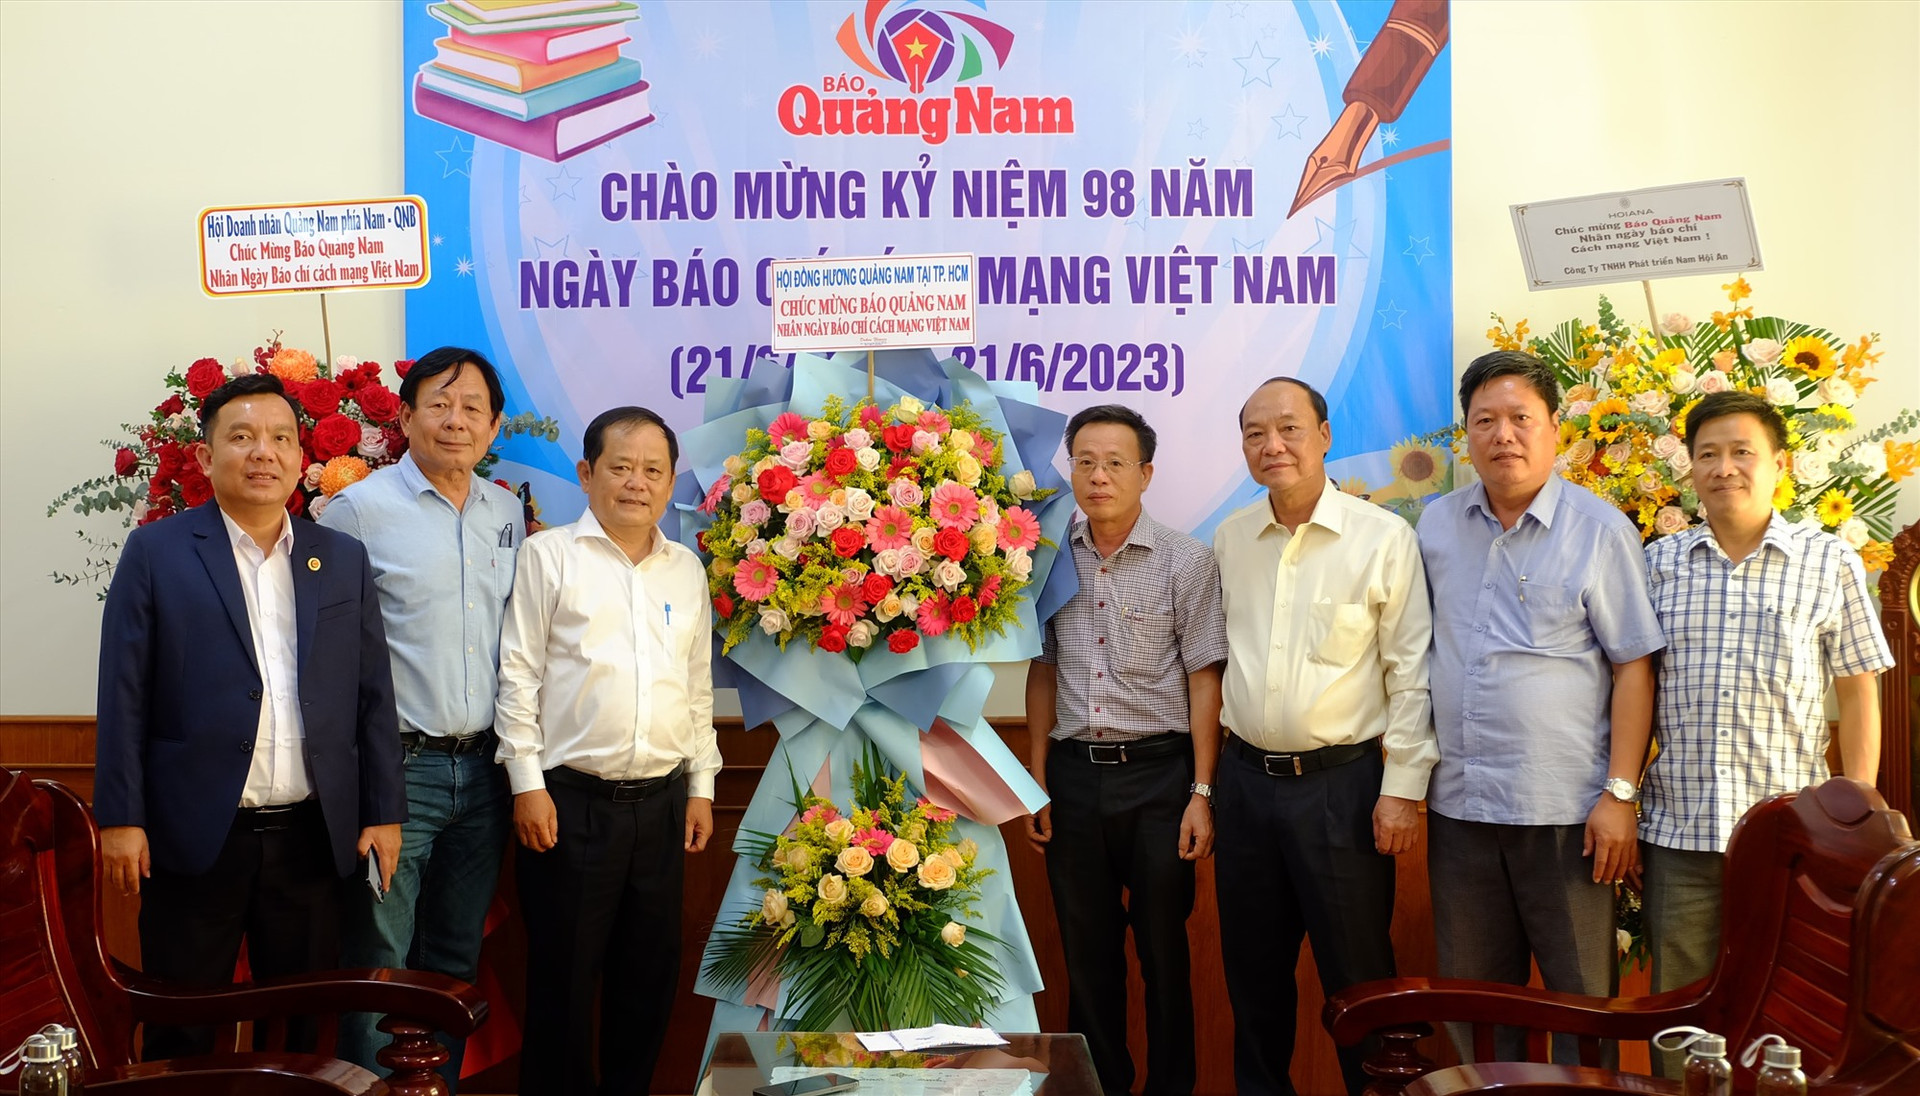 Hội đồng hương Quảng Nam tại TP.Hồ Chí Minh và Hội Doanh nhân Quảng Nam phía Nam thăm và chúc mừng Báo Quảng Nam. Ảnh: M.L